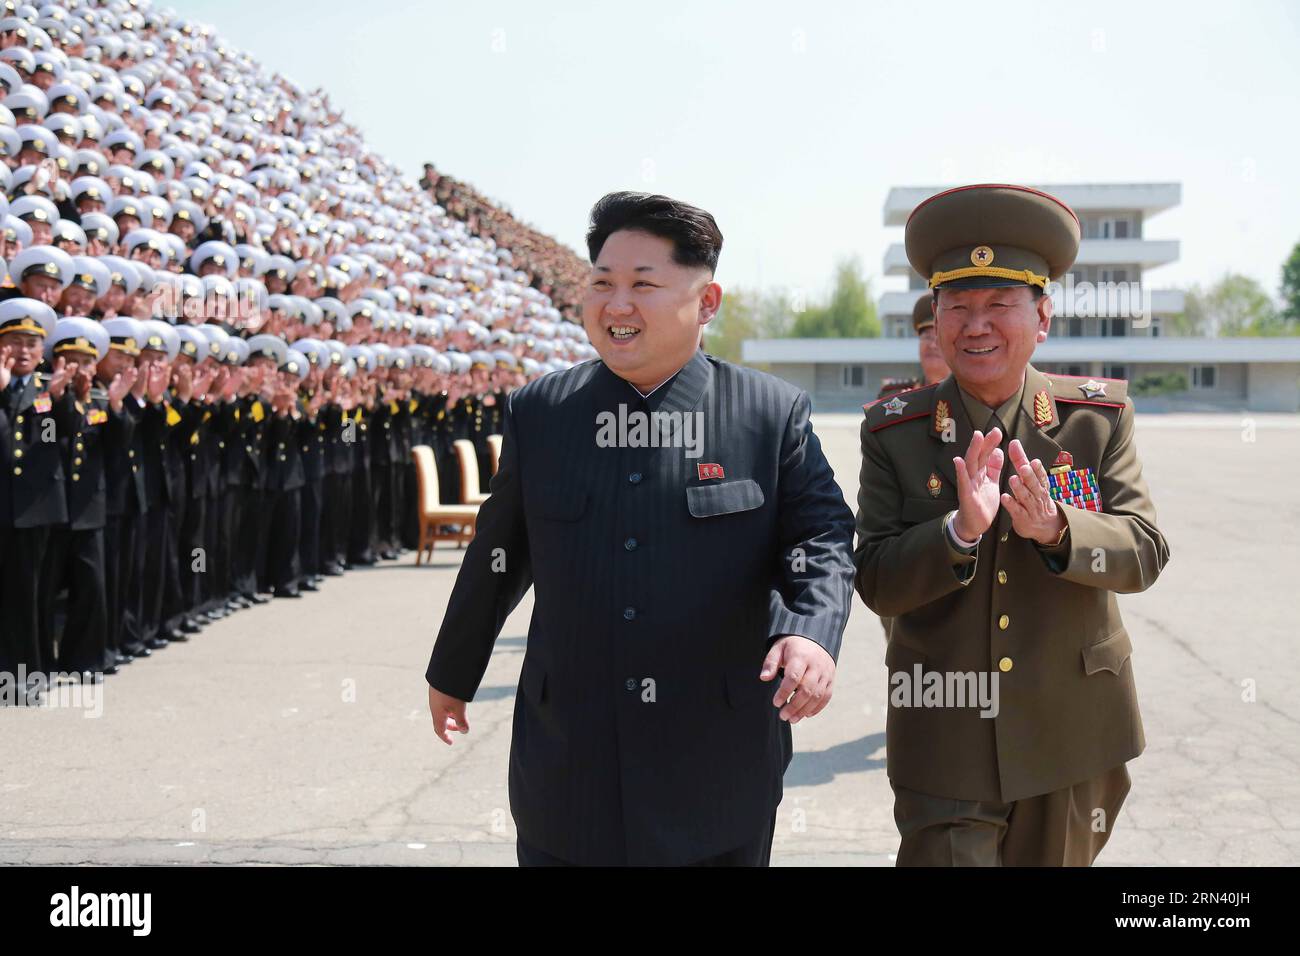 (150501) -- PJÖNGJANG, 1. Mai 2015 -- Foto der Koreanischen Zentralnachrichtenagentur () am 1. Mai 2015 zeigt den Spitzenführer der Demokratischen Volksrepublik Korea (DVRK) Kim Jong UN bei einer Fotosession mit den Teilnehmern der 5. Konferenz der Ausbildungsbeamten der Koreanischen Volksarmee (KPA). DPRK-PJÖNGJANG-5. KONFERENZ DER KPA-AUSBILDUNGSLEITER KCNA PUBLICATIONxNOTxINxCHN Pjöngjang 1. Mai 2015 Foto der Koreanischen Zentralnachrichtenagentur AM 1. Mai 2015 zeigt, dass der Spitzenführer der Demokratischen Prominenten der Republik Korea, DVRK Kim Jong UN, eine Fotosession mit der Particip hat Stockfoto